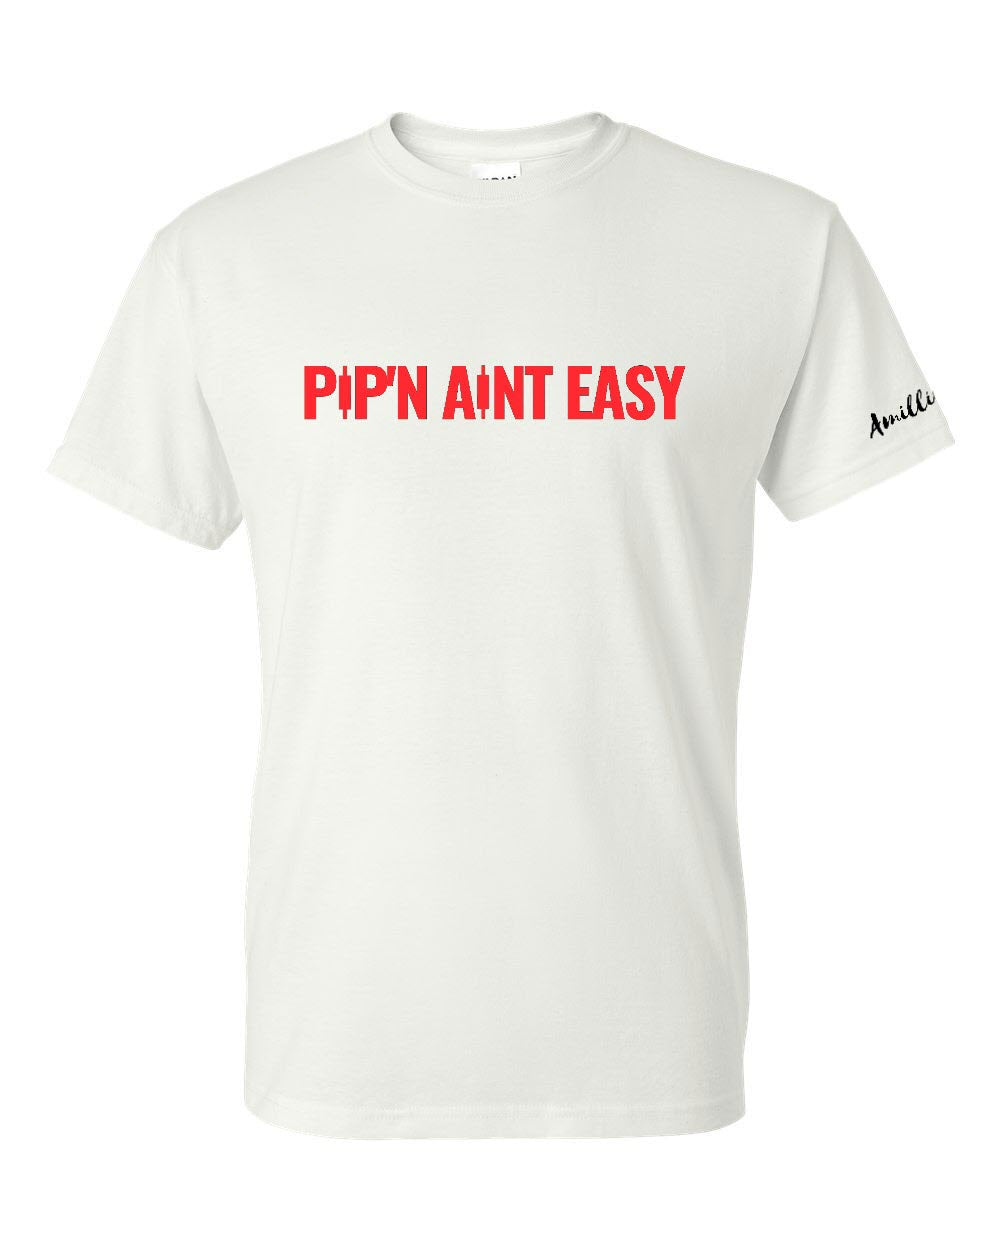 Pip'n Aint Easy